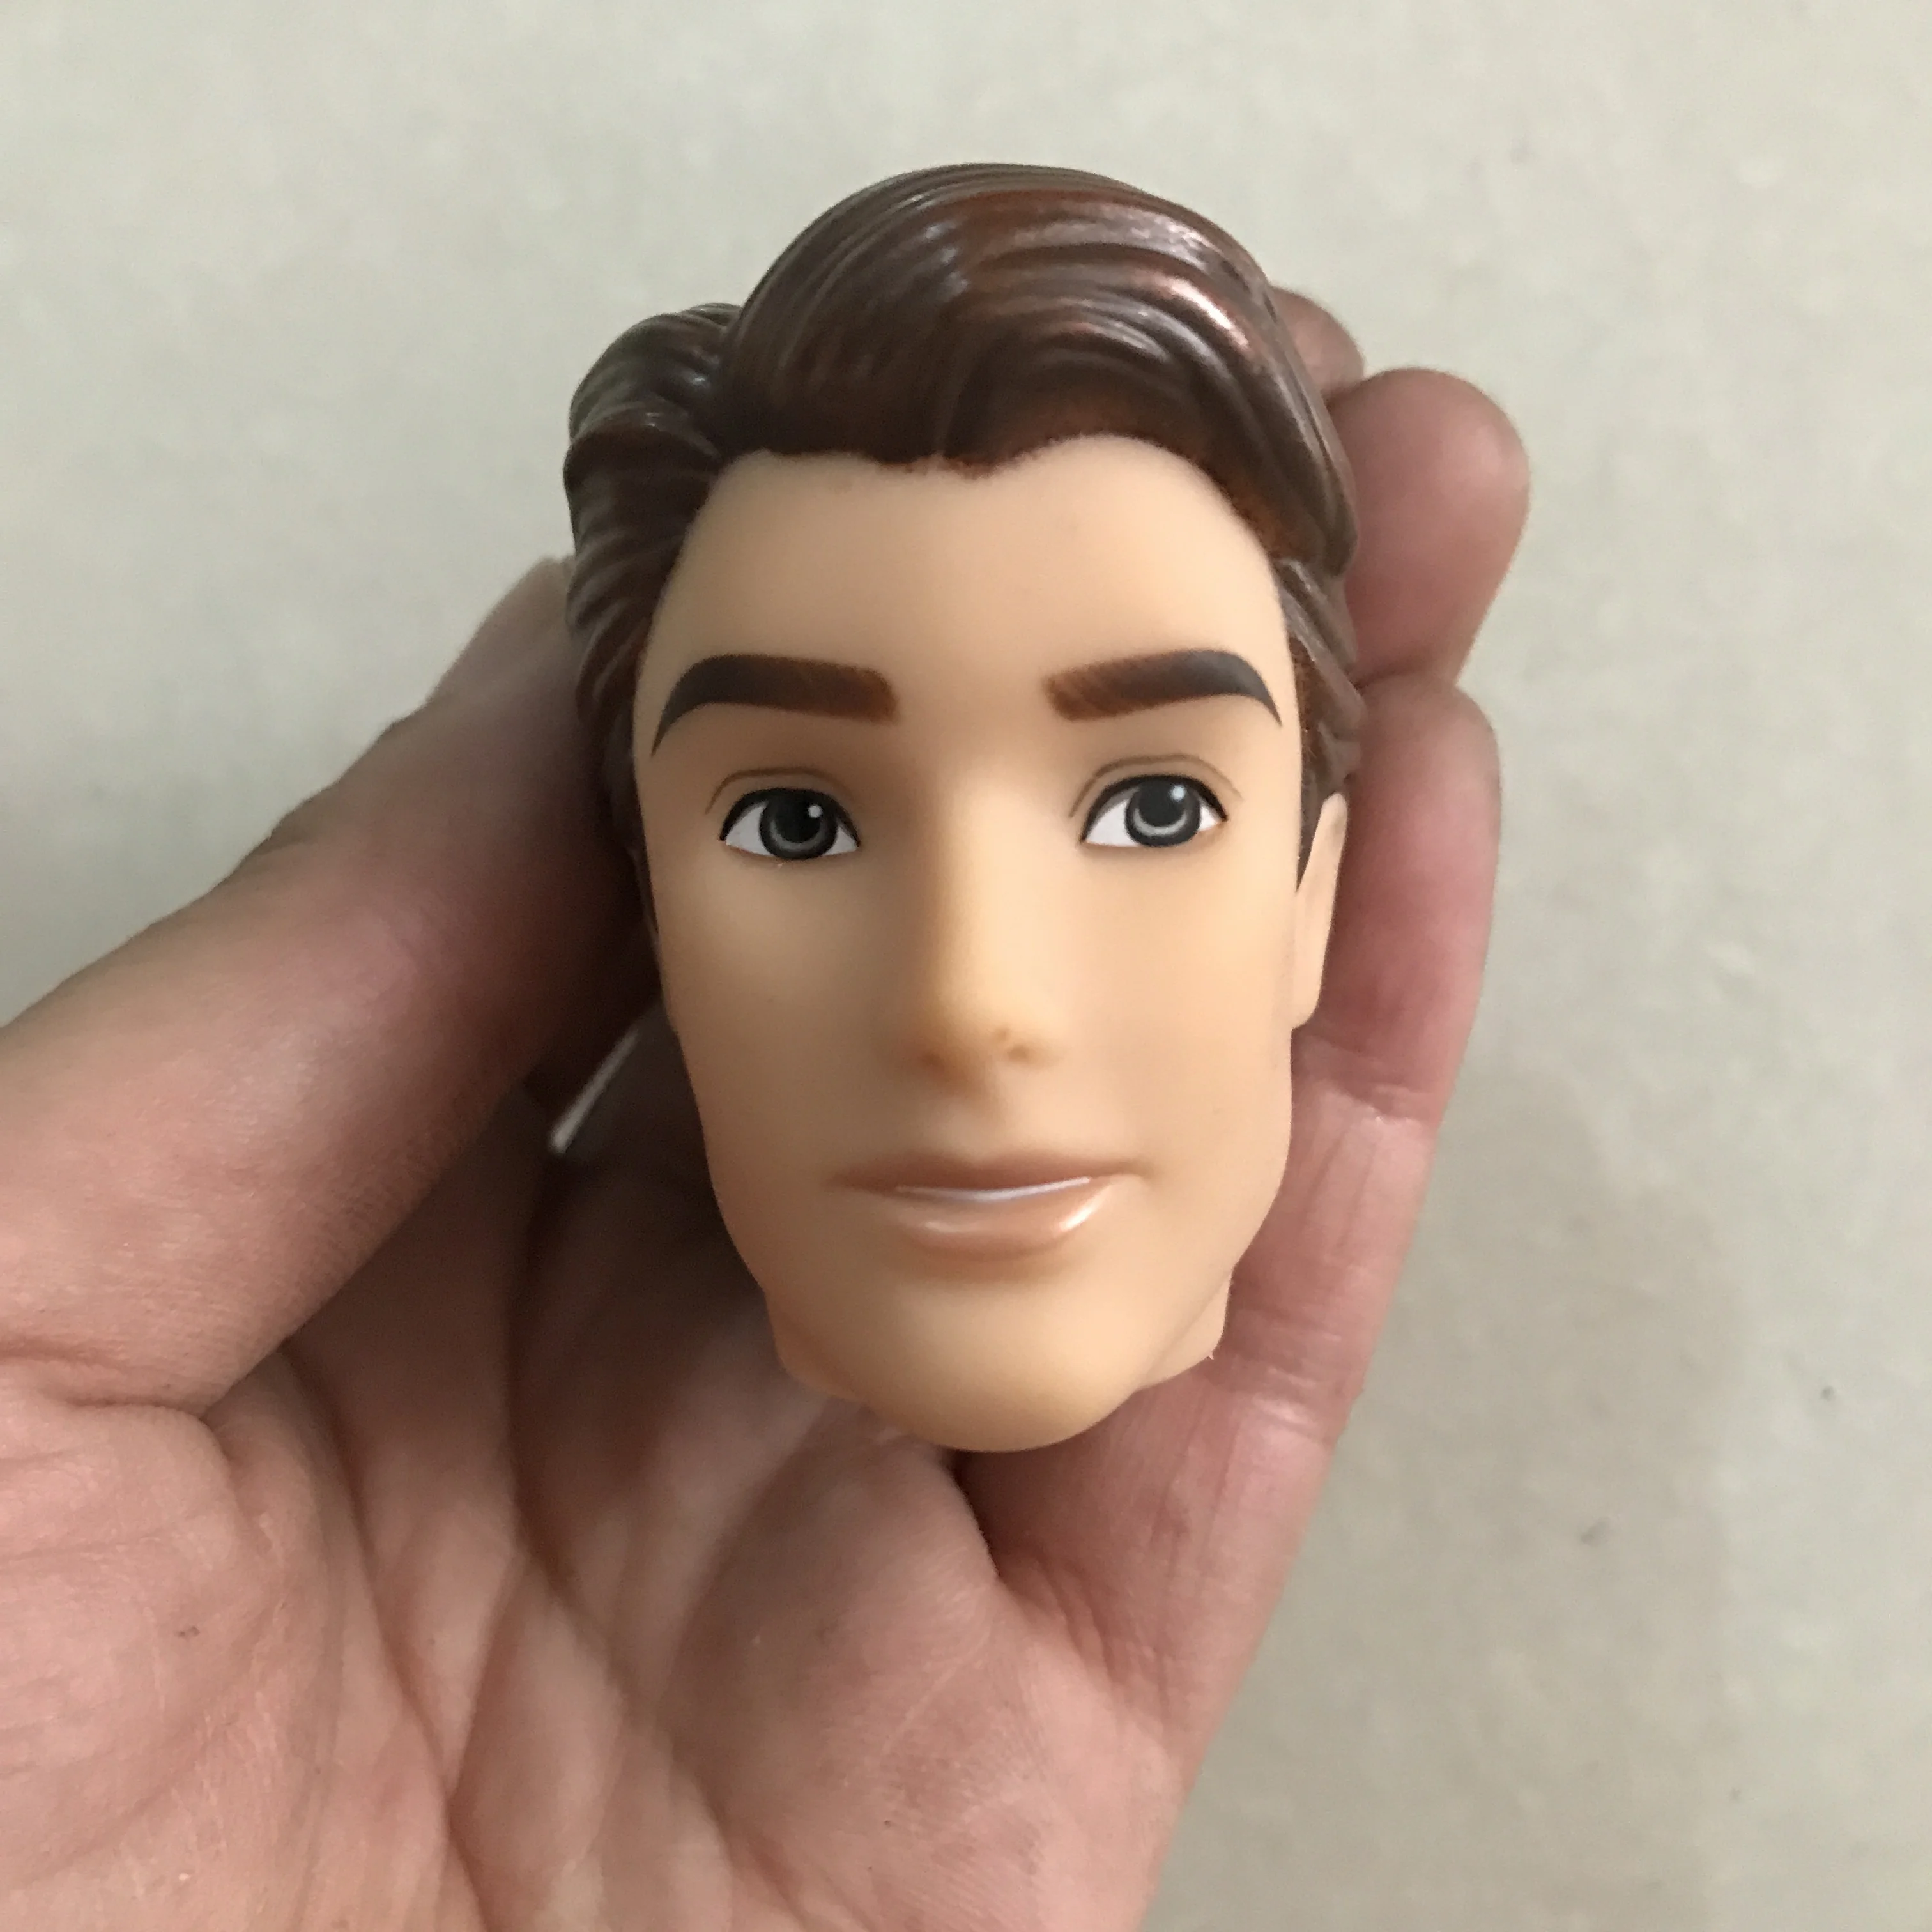 Кукольная голова для Кена бойфренда 30 см мужское тело куклы принца детские